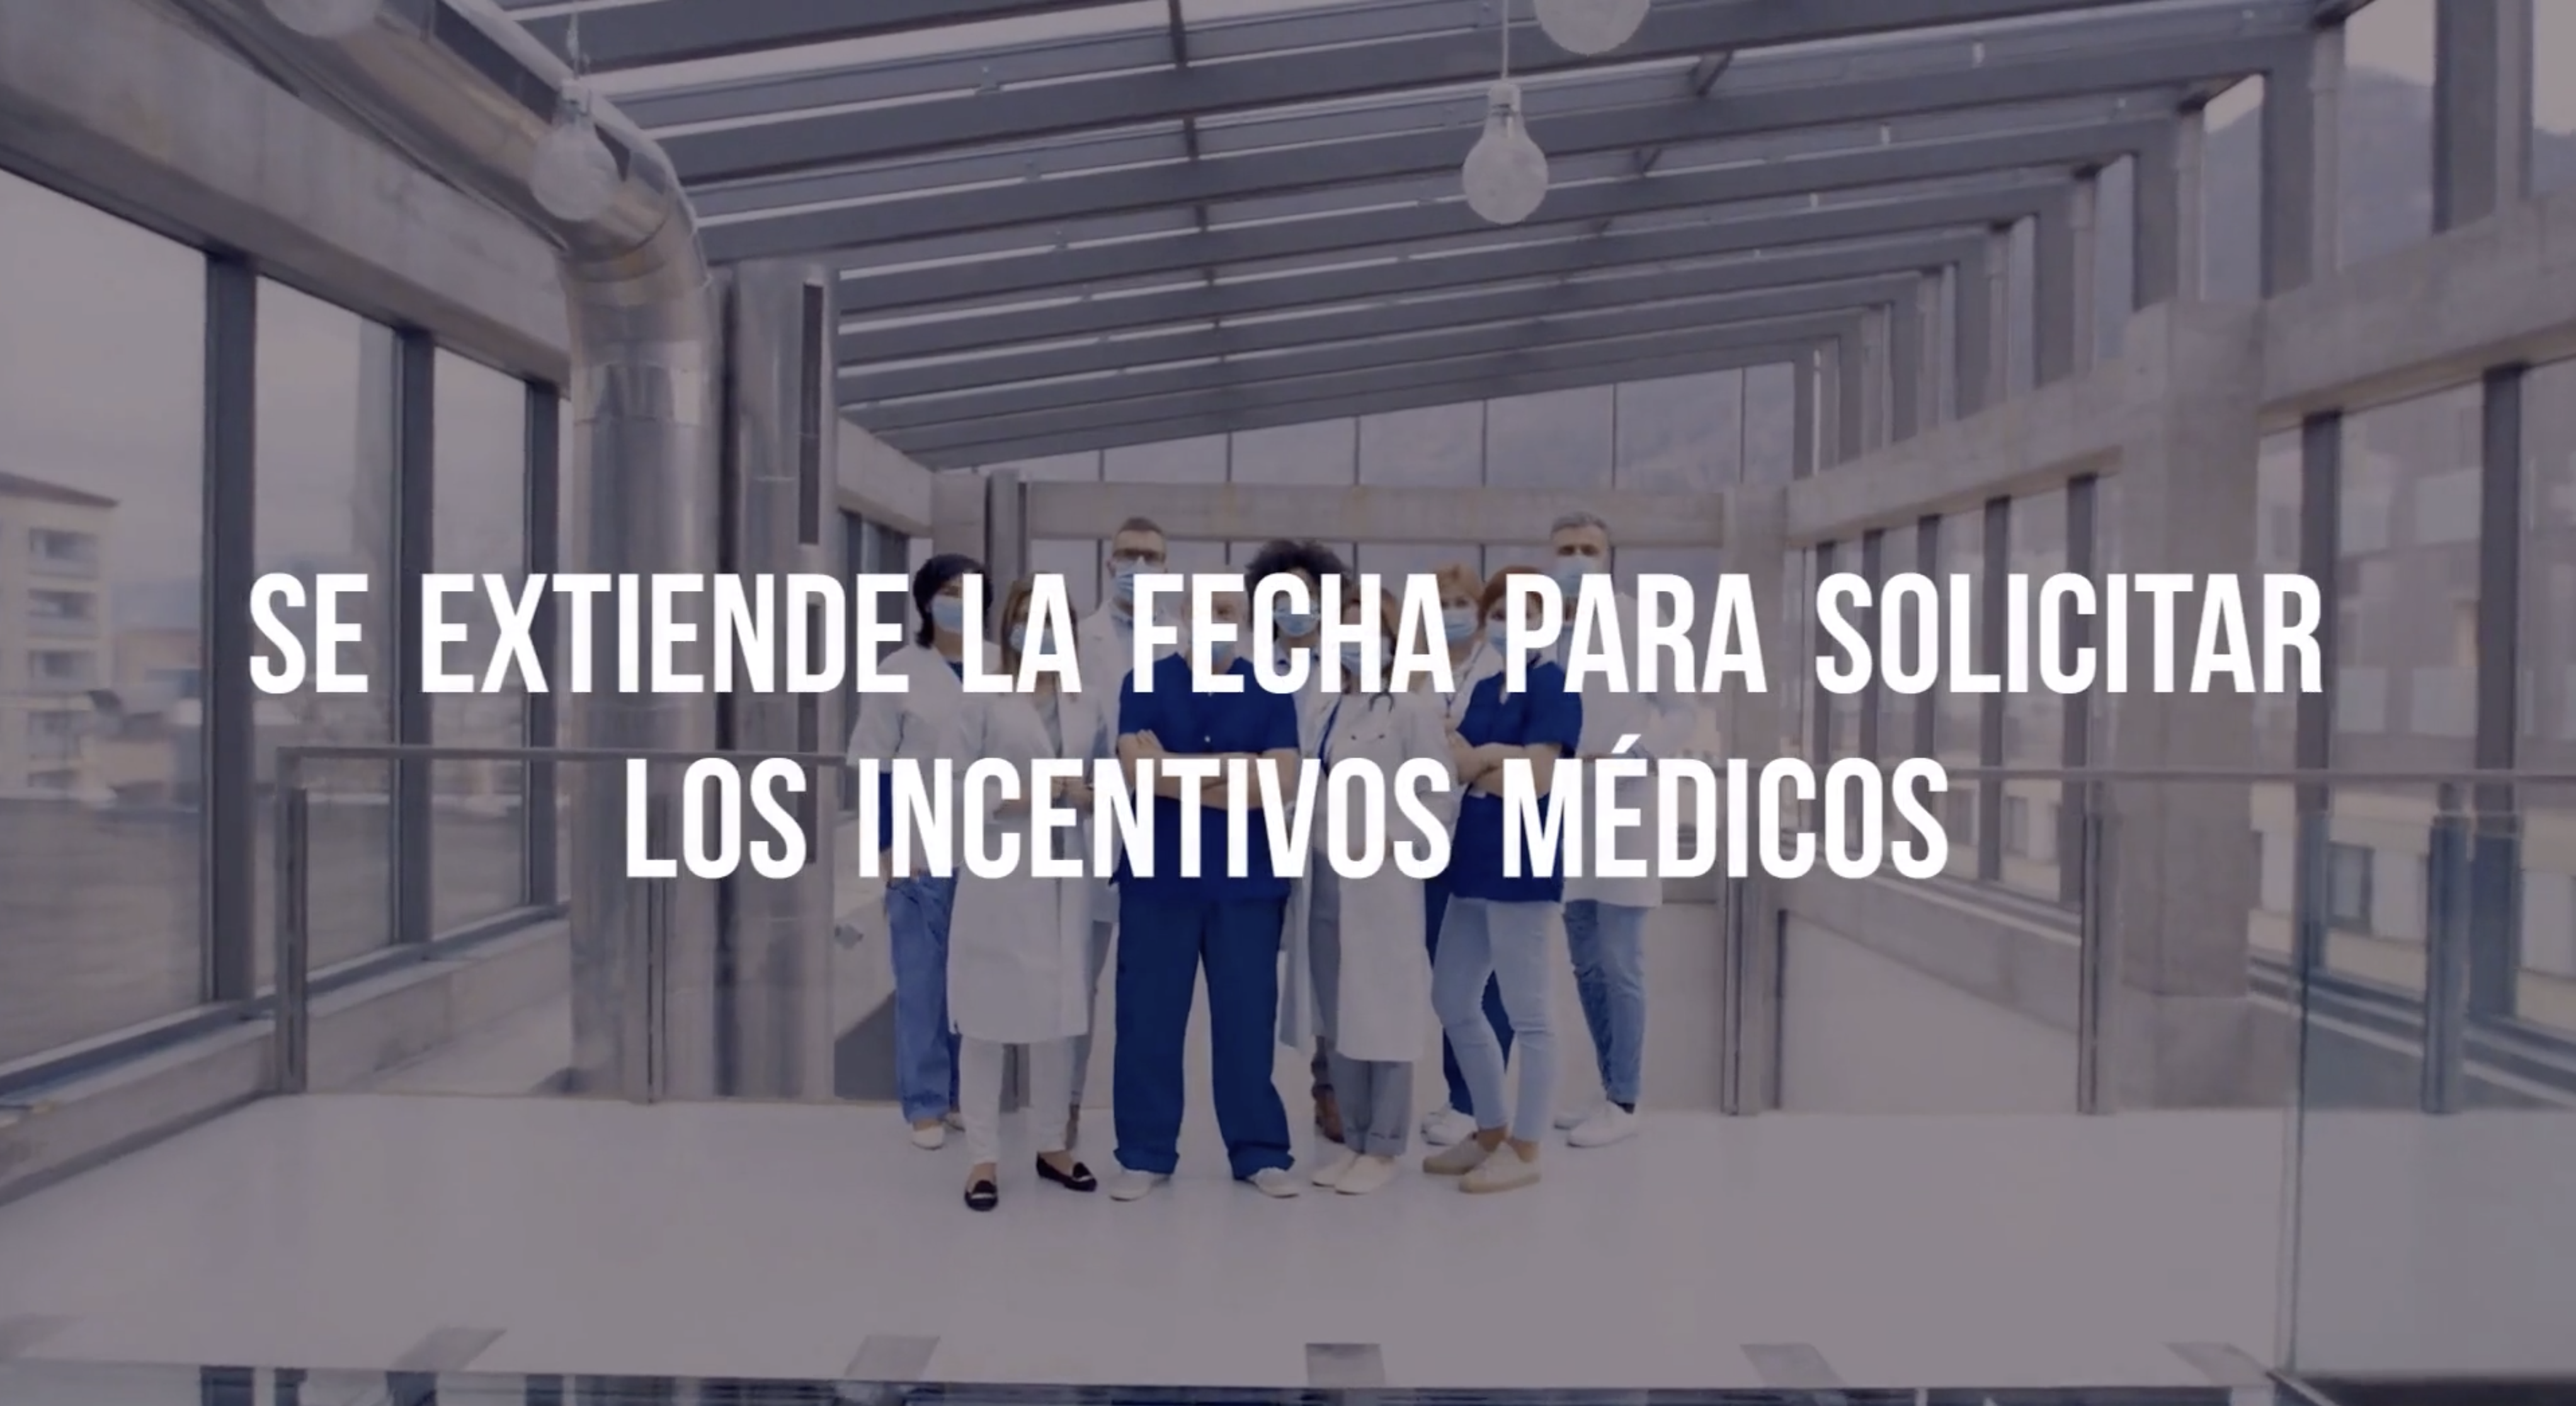 Incentivos-medicos-ley-106-2020